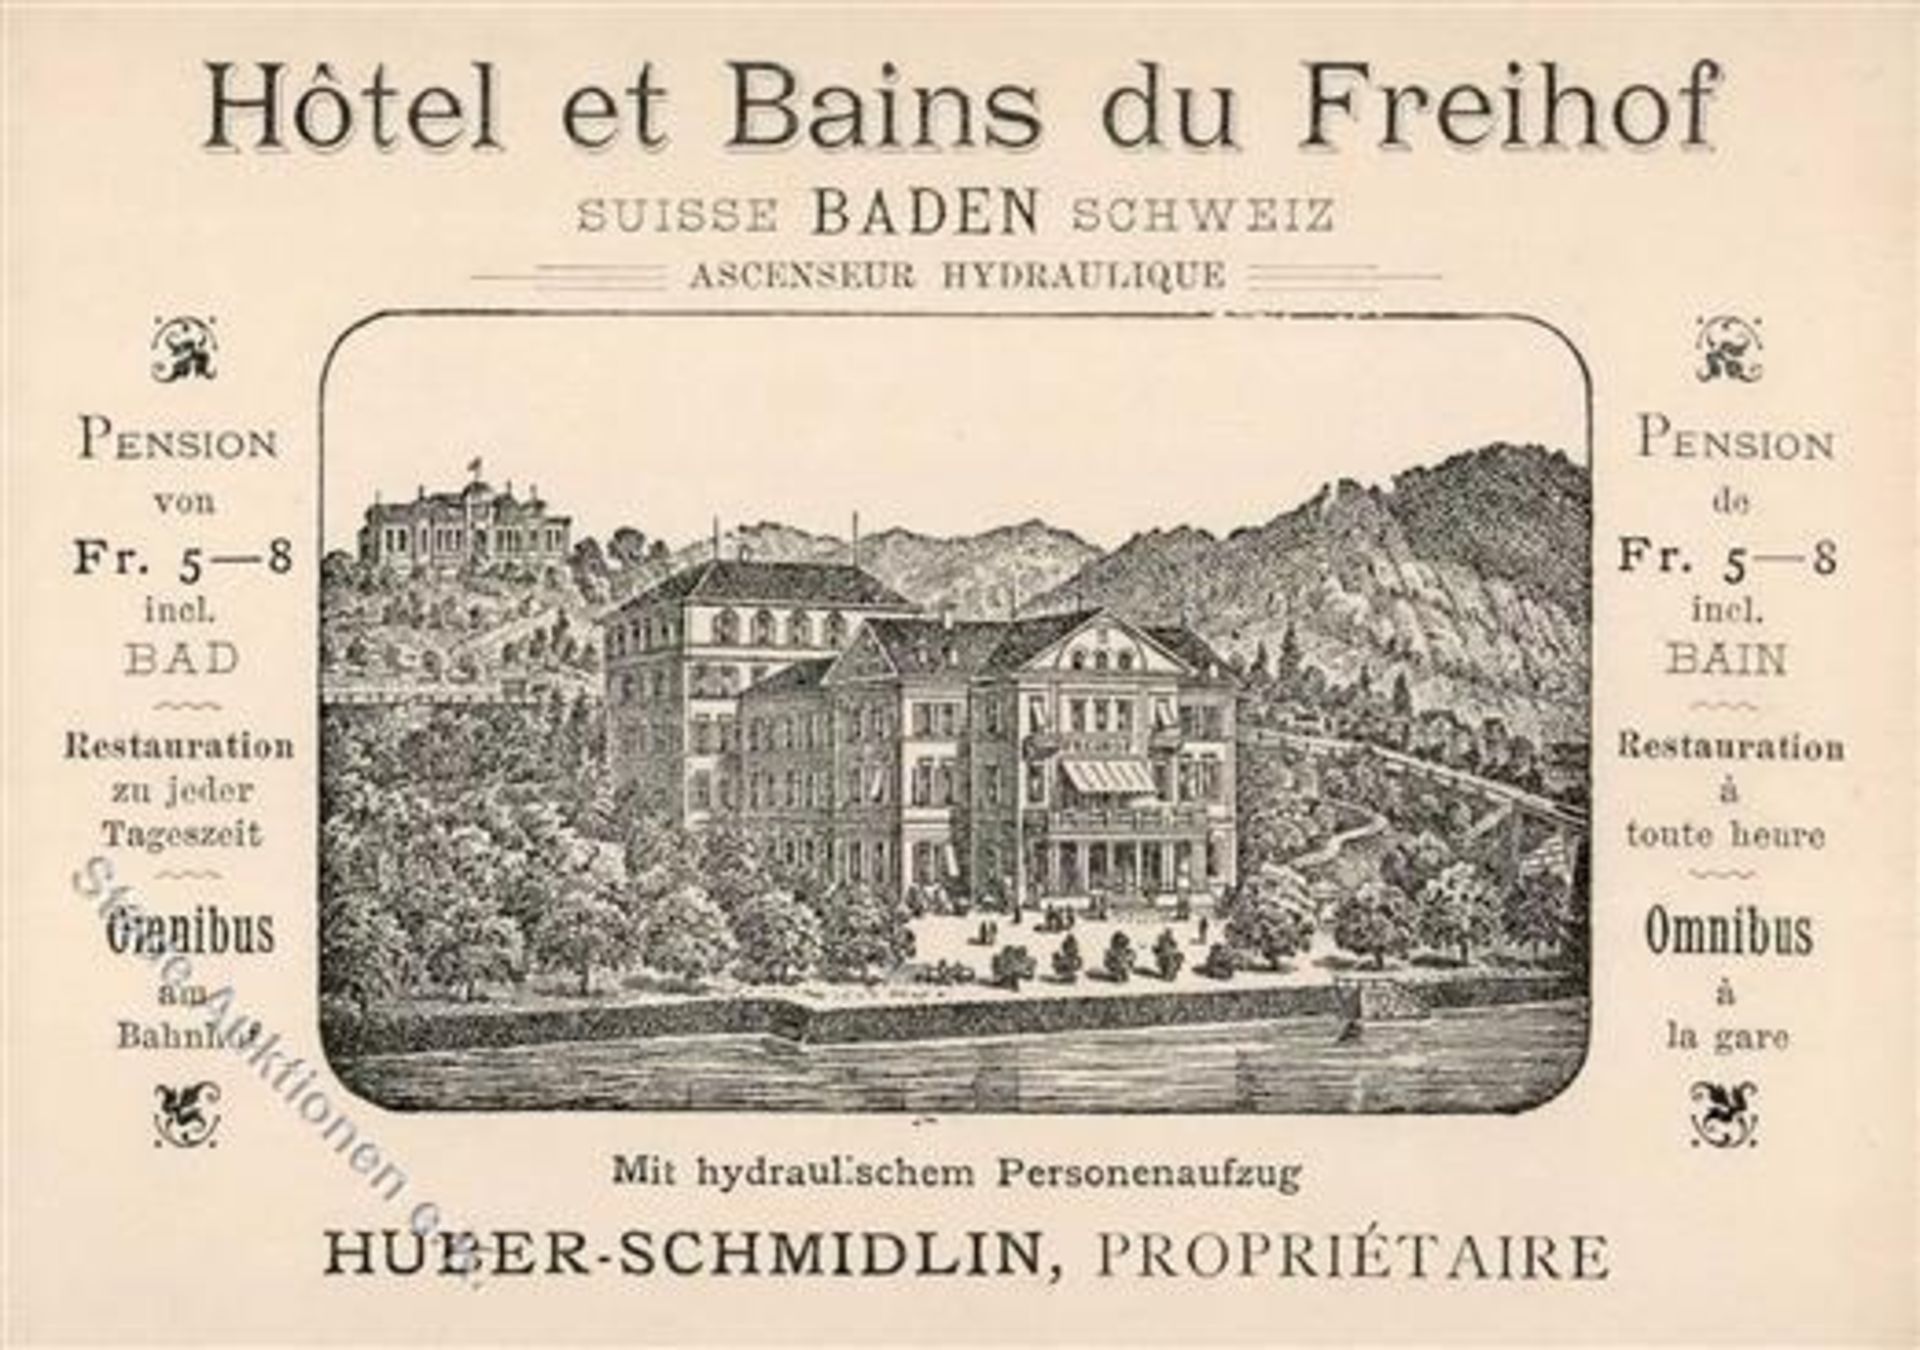 Baden (5400) Schweiz Hotel du Freihof Werbe AK I (keine AK-Einteilung)Dieses Los wird in einer